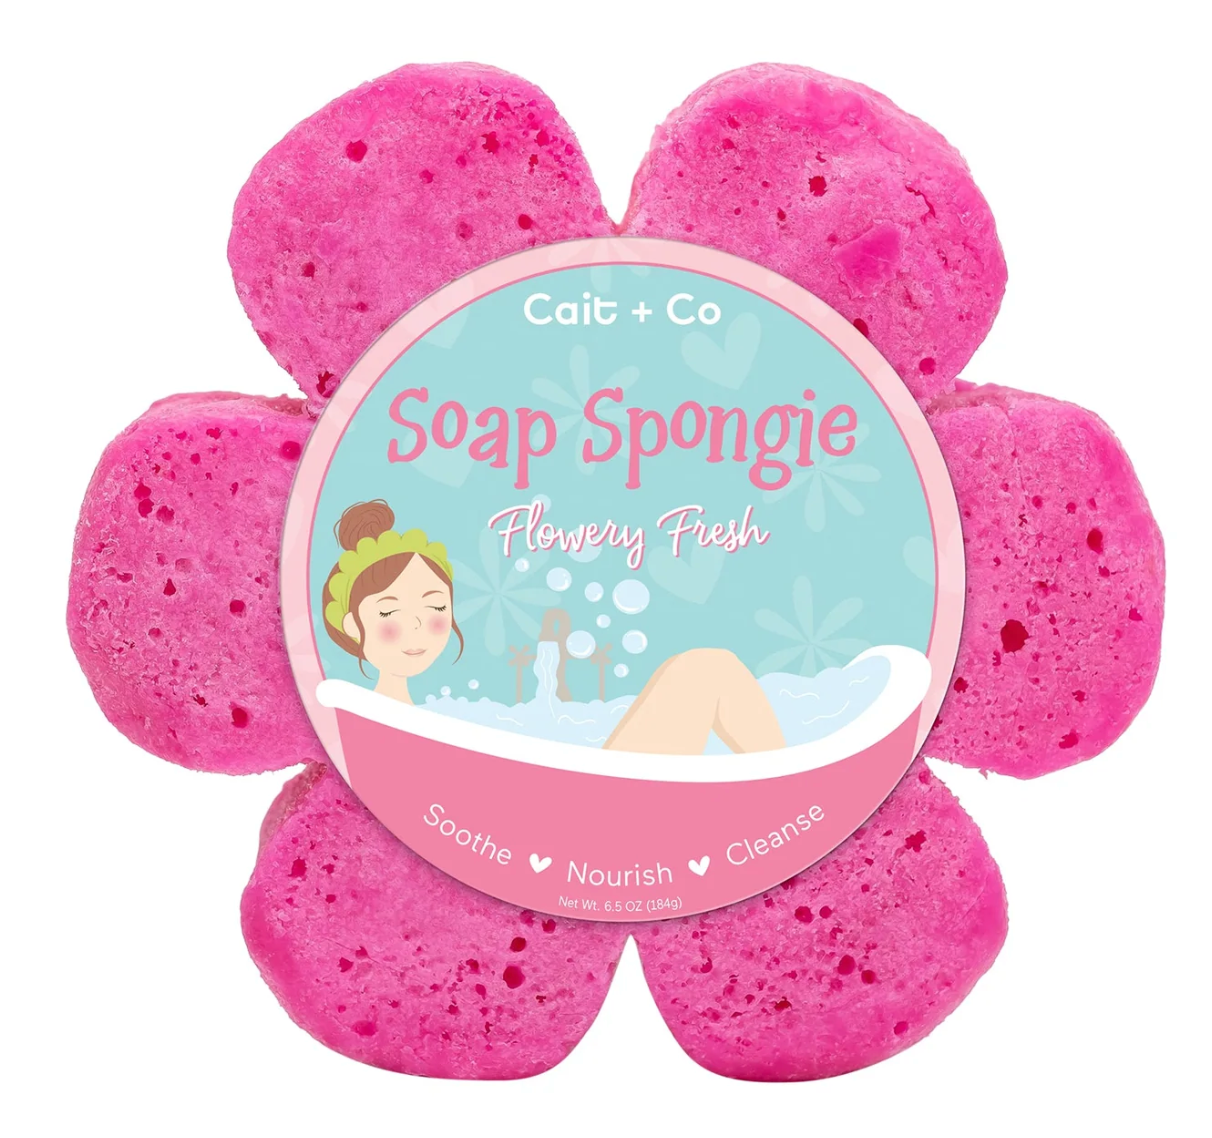 Soap Spongie: Flowering Fresh